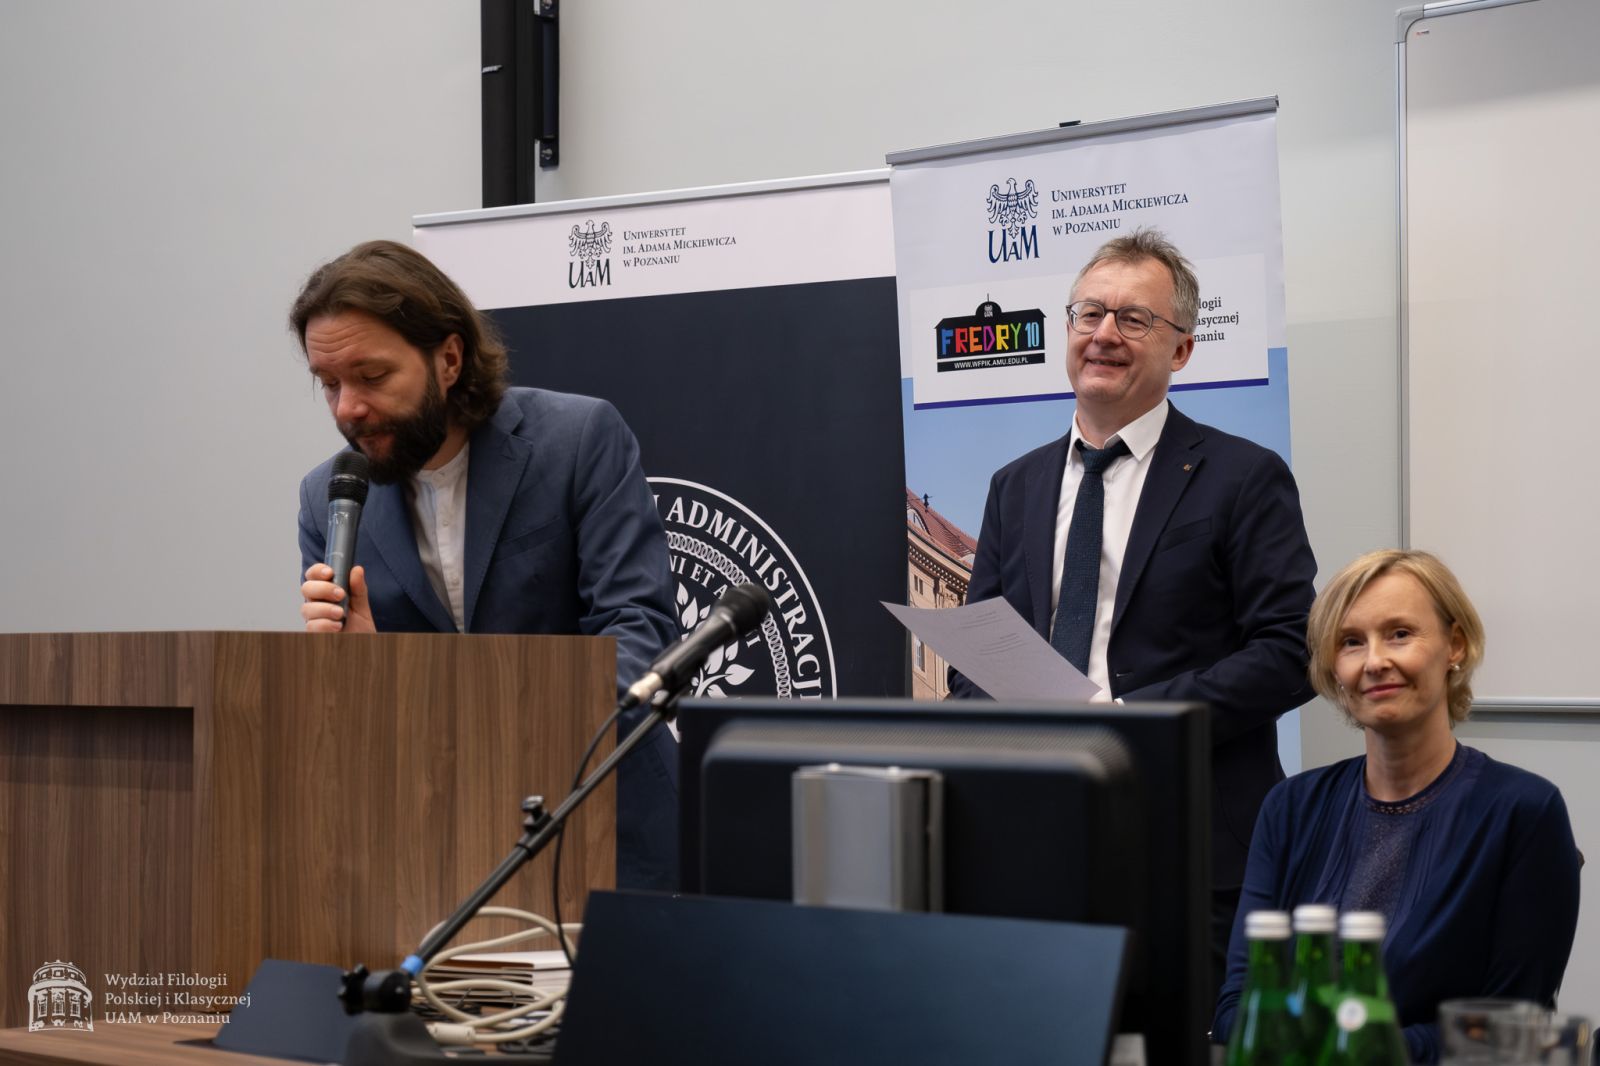 Dr Krzysztof Hoffmann przemawia przy mównicy do mikrofonu, pochylony nad pulpitem, za nim stoi uśmiechnięty dziekan WFPiK, obok siedzi prof. Katarzyna Klafkowska-Waśniowska.